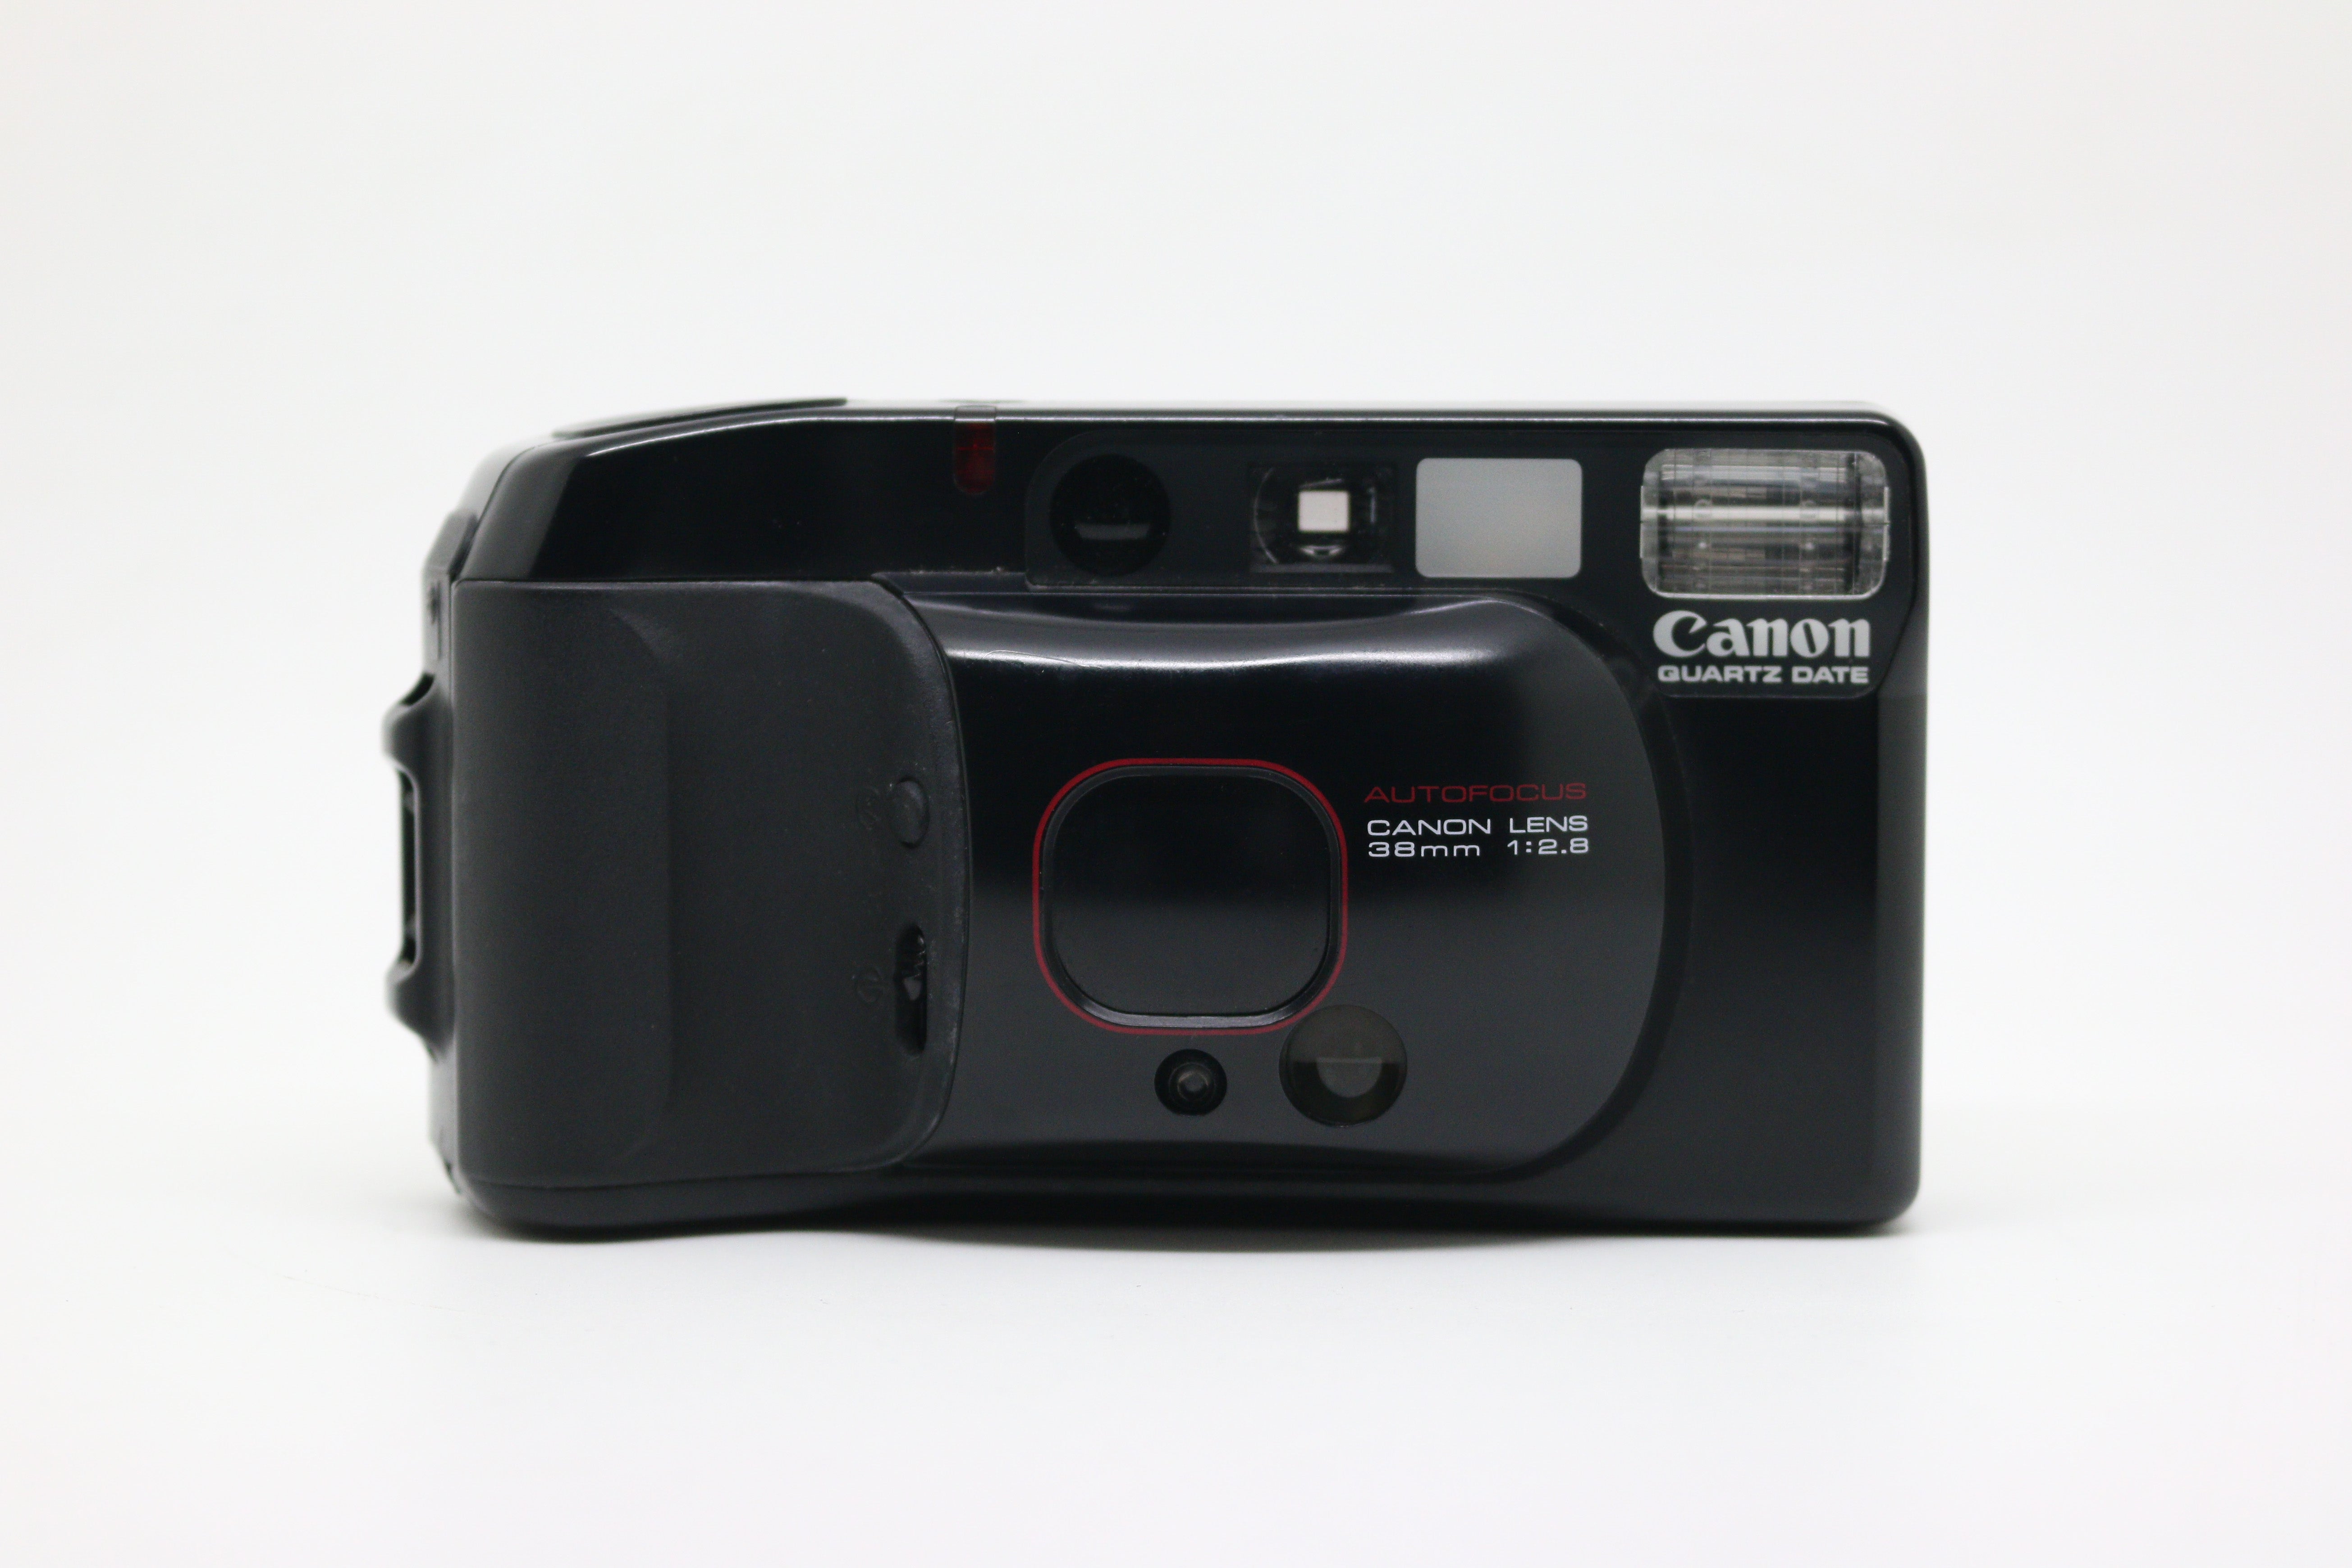 Canon Sure Shot Autoboy 3 (Quartz Date)